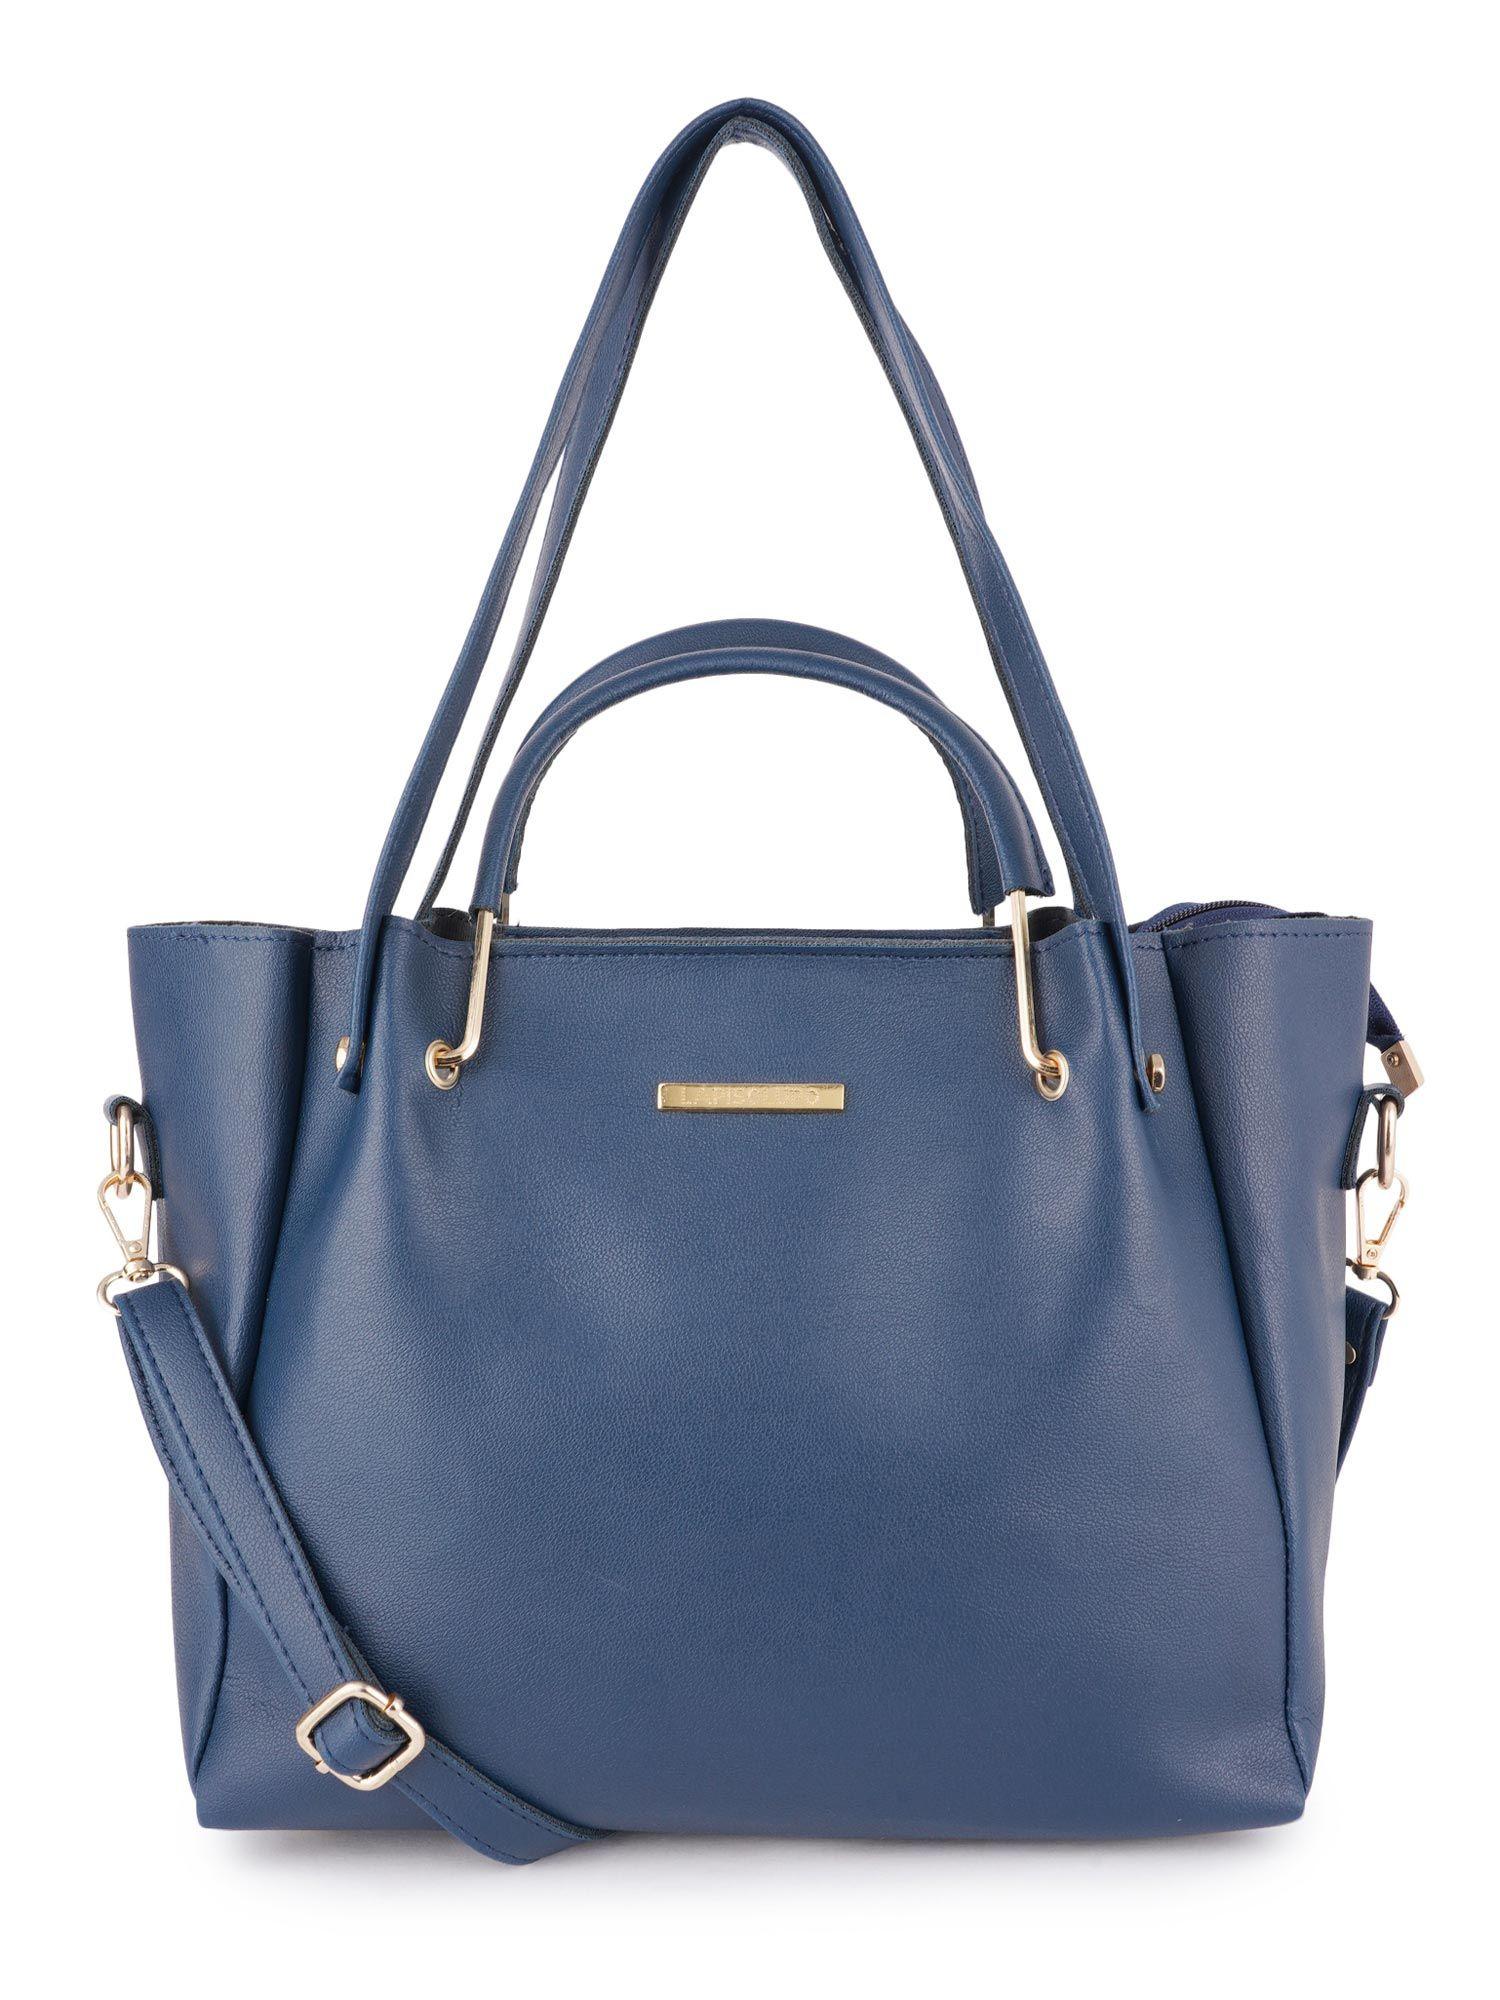 Women Handbag (LLHB0101BL Blue)